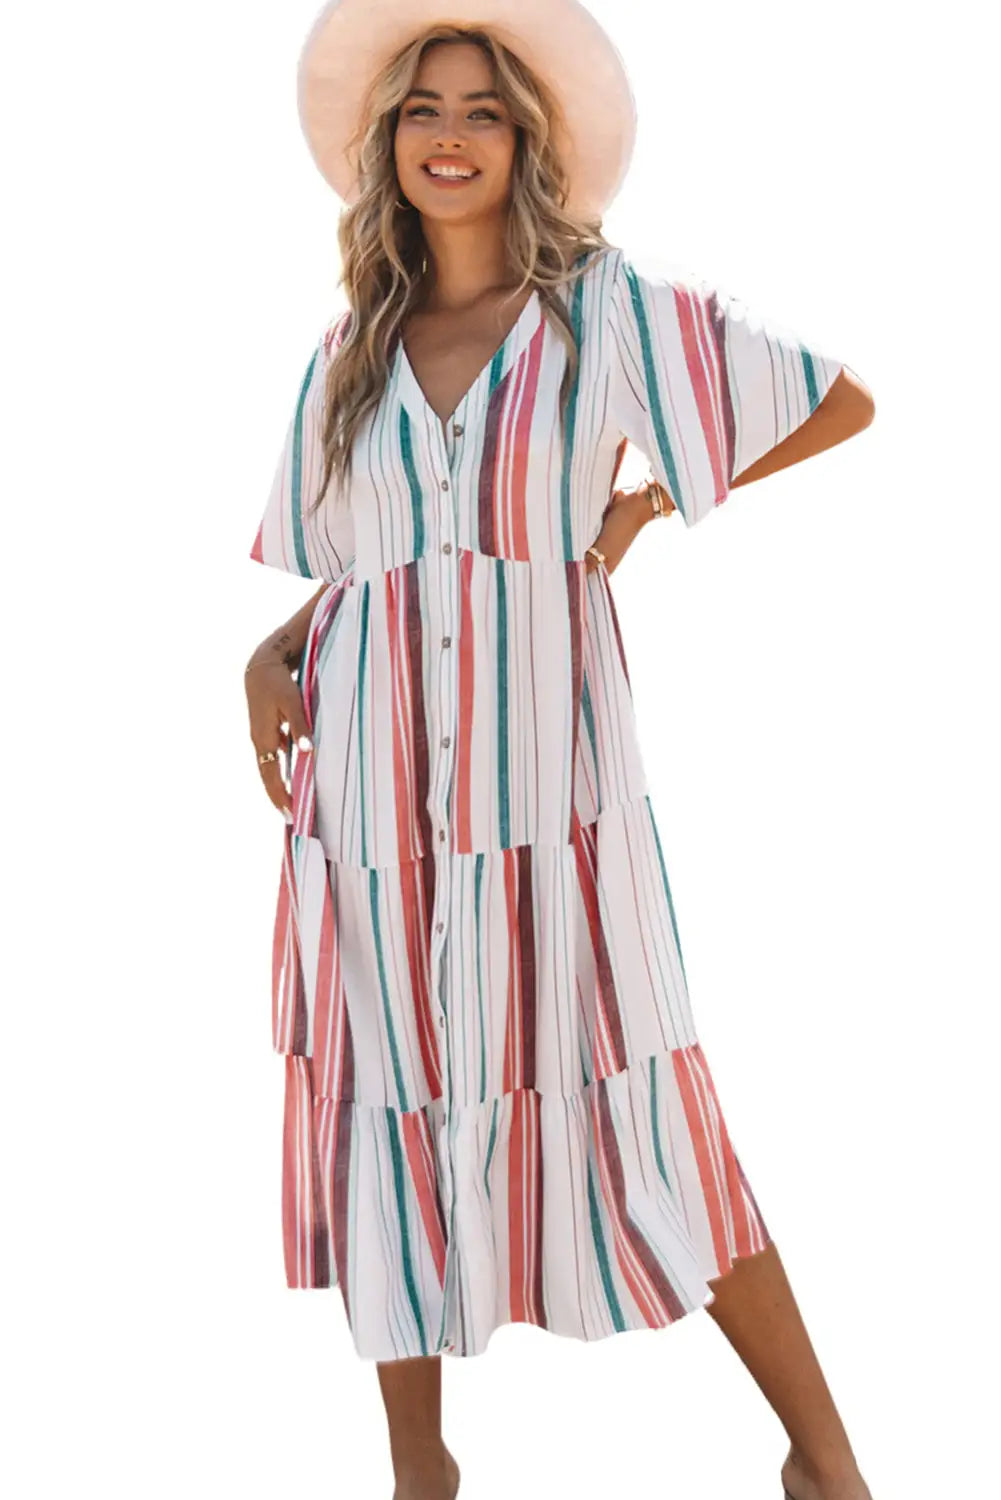 Serape striped v neck buttoned shirt dress - maxi dresses